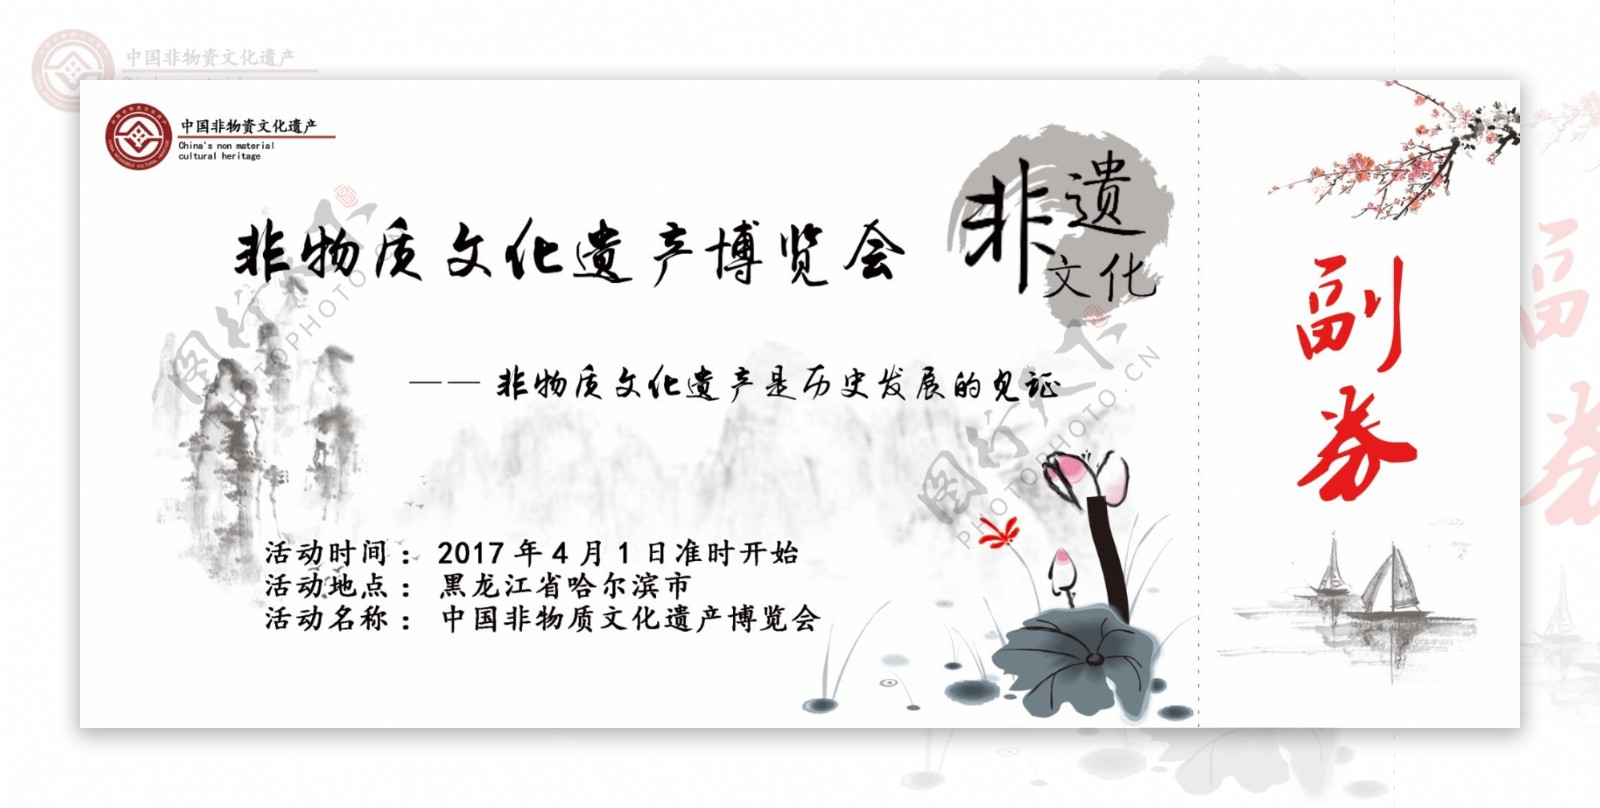 中国非物质文化遗产博览会